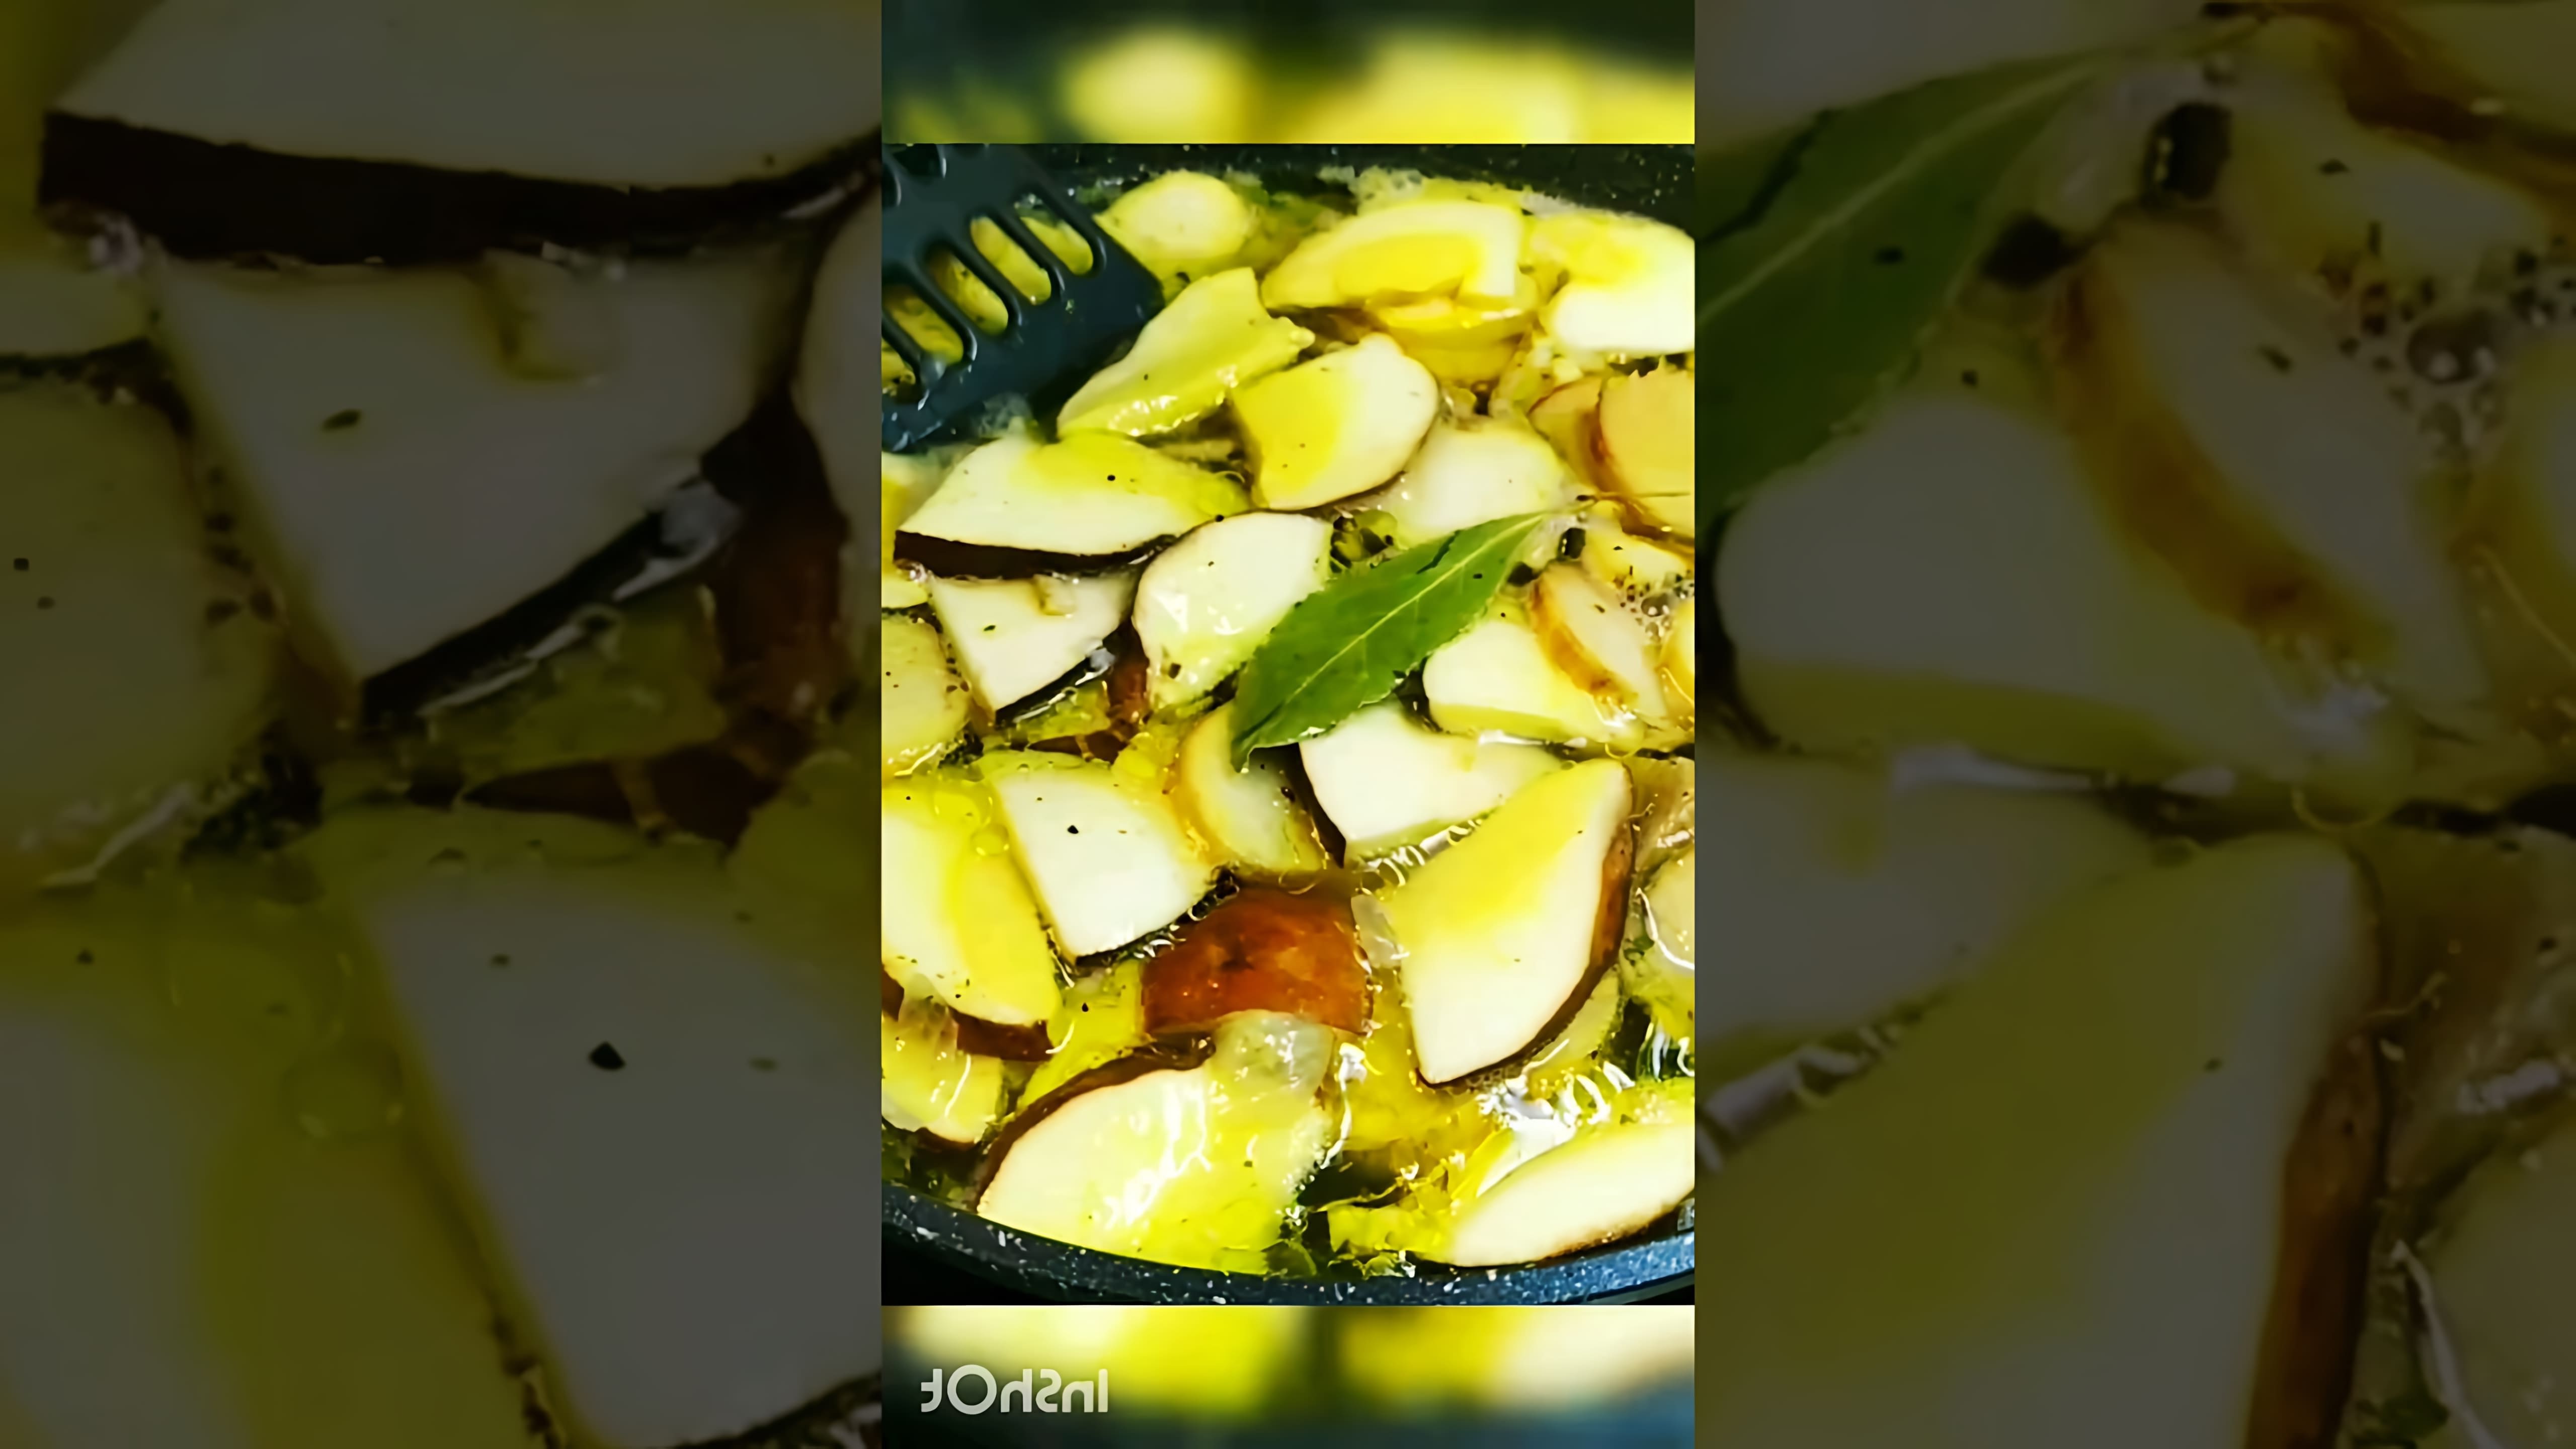 В этом видео демонстрируется процесс приготовления ароматного супа из белых грибов моховиков